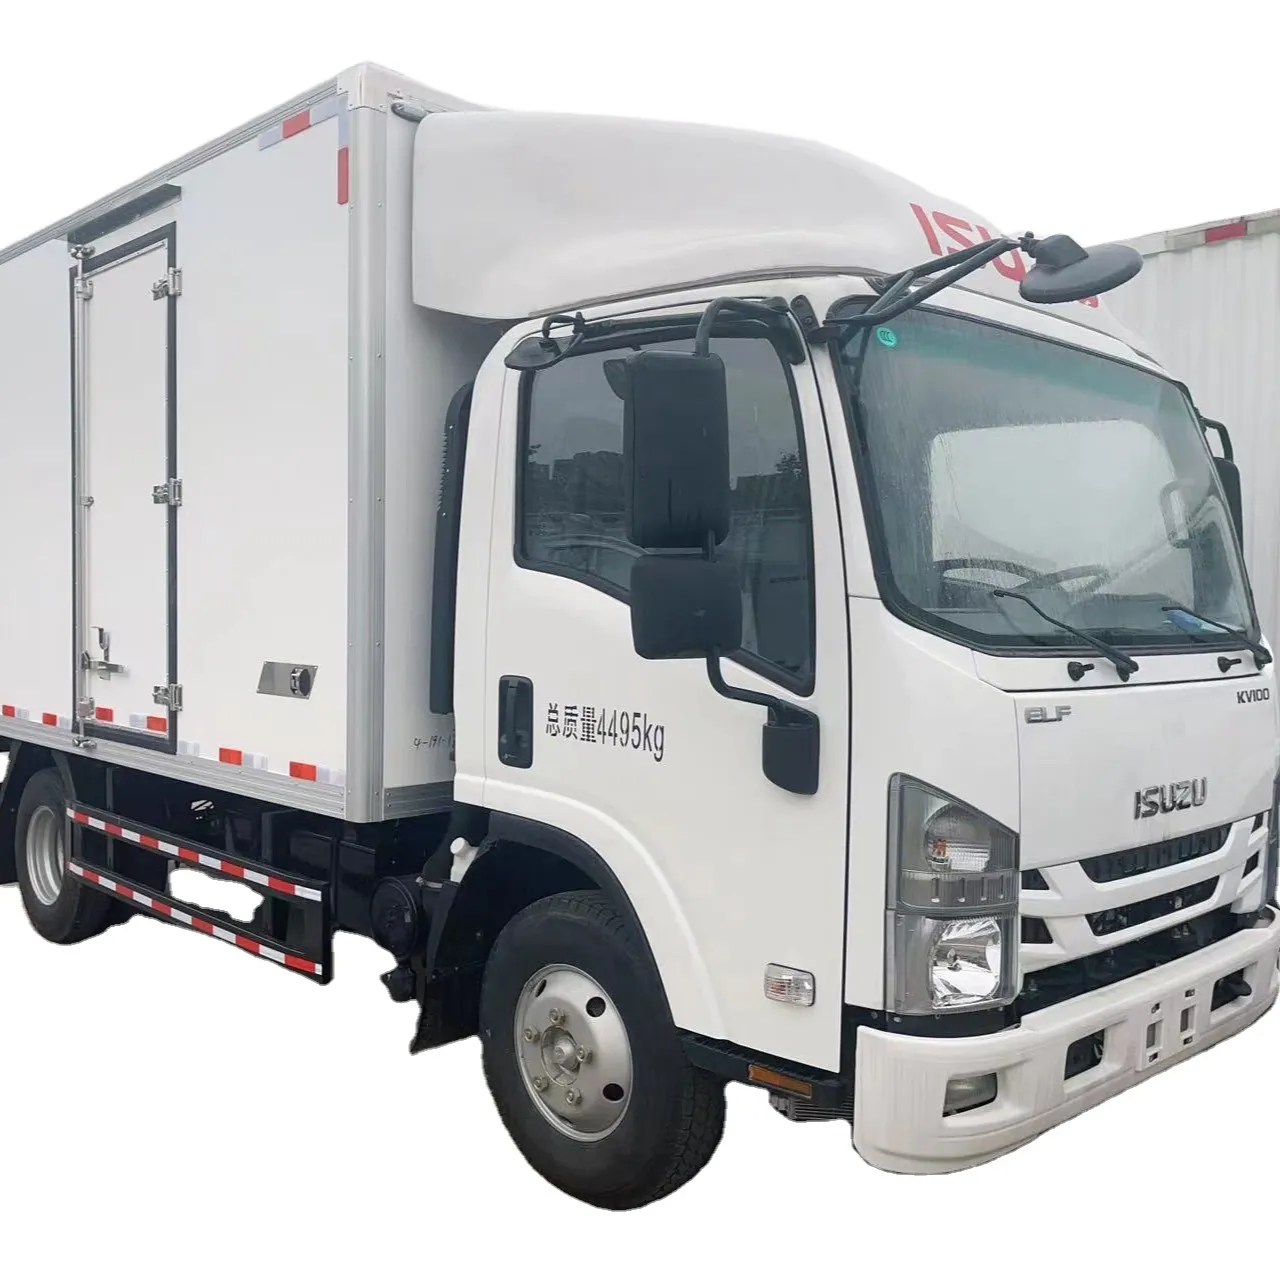 Xe tải tủ lạnh ISUZU 4.2m hộp-15-20 nhiệt độ được sử dụng để lưu trữ và vận chuyển cá đông lạnh thực phẩm tươi sống